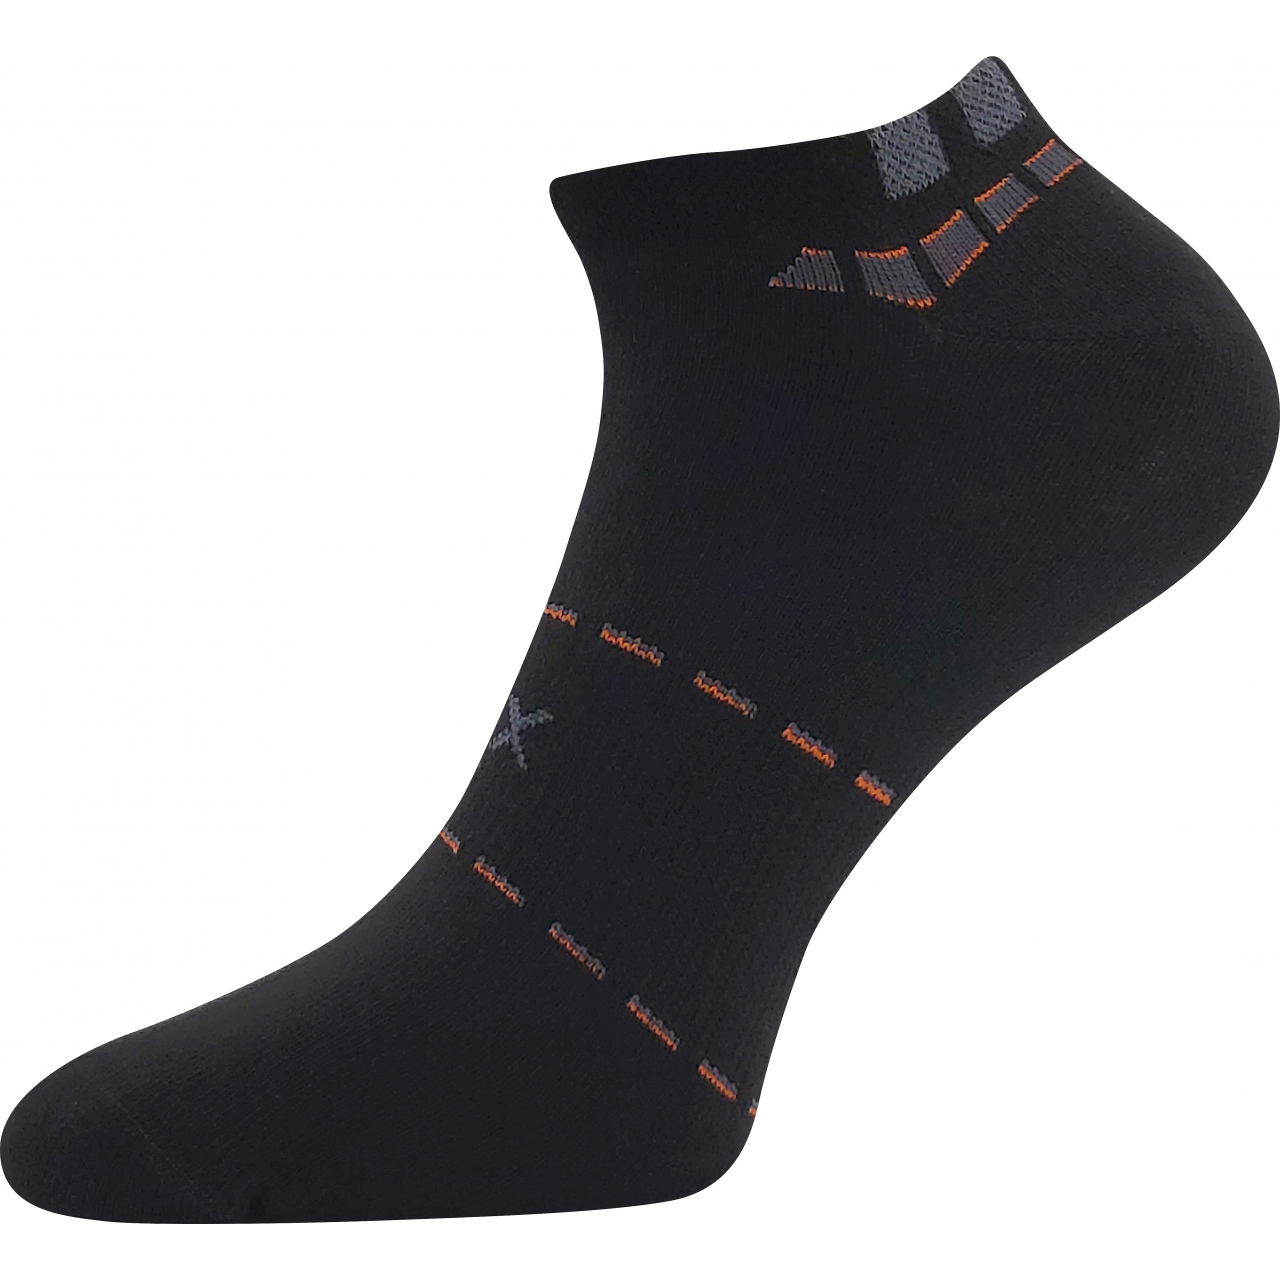 Ponožky pánské sportovní Voxx Rex 16 - černé, 43-46